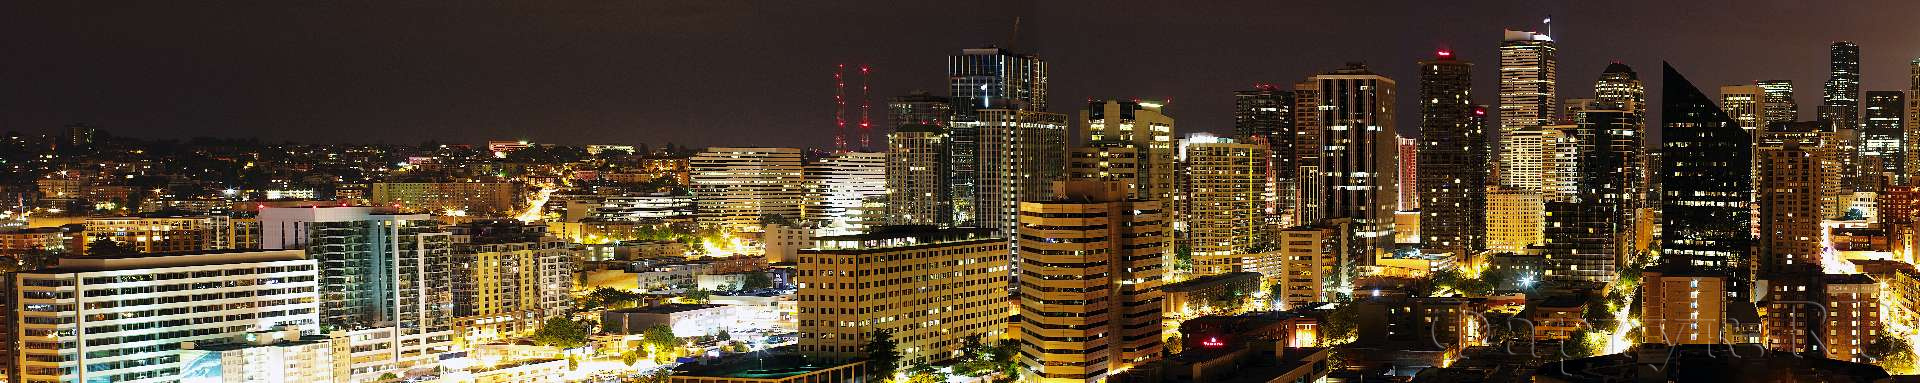 Панорамный вид ночного города